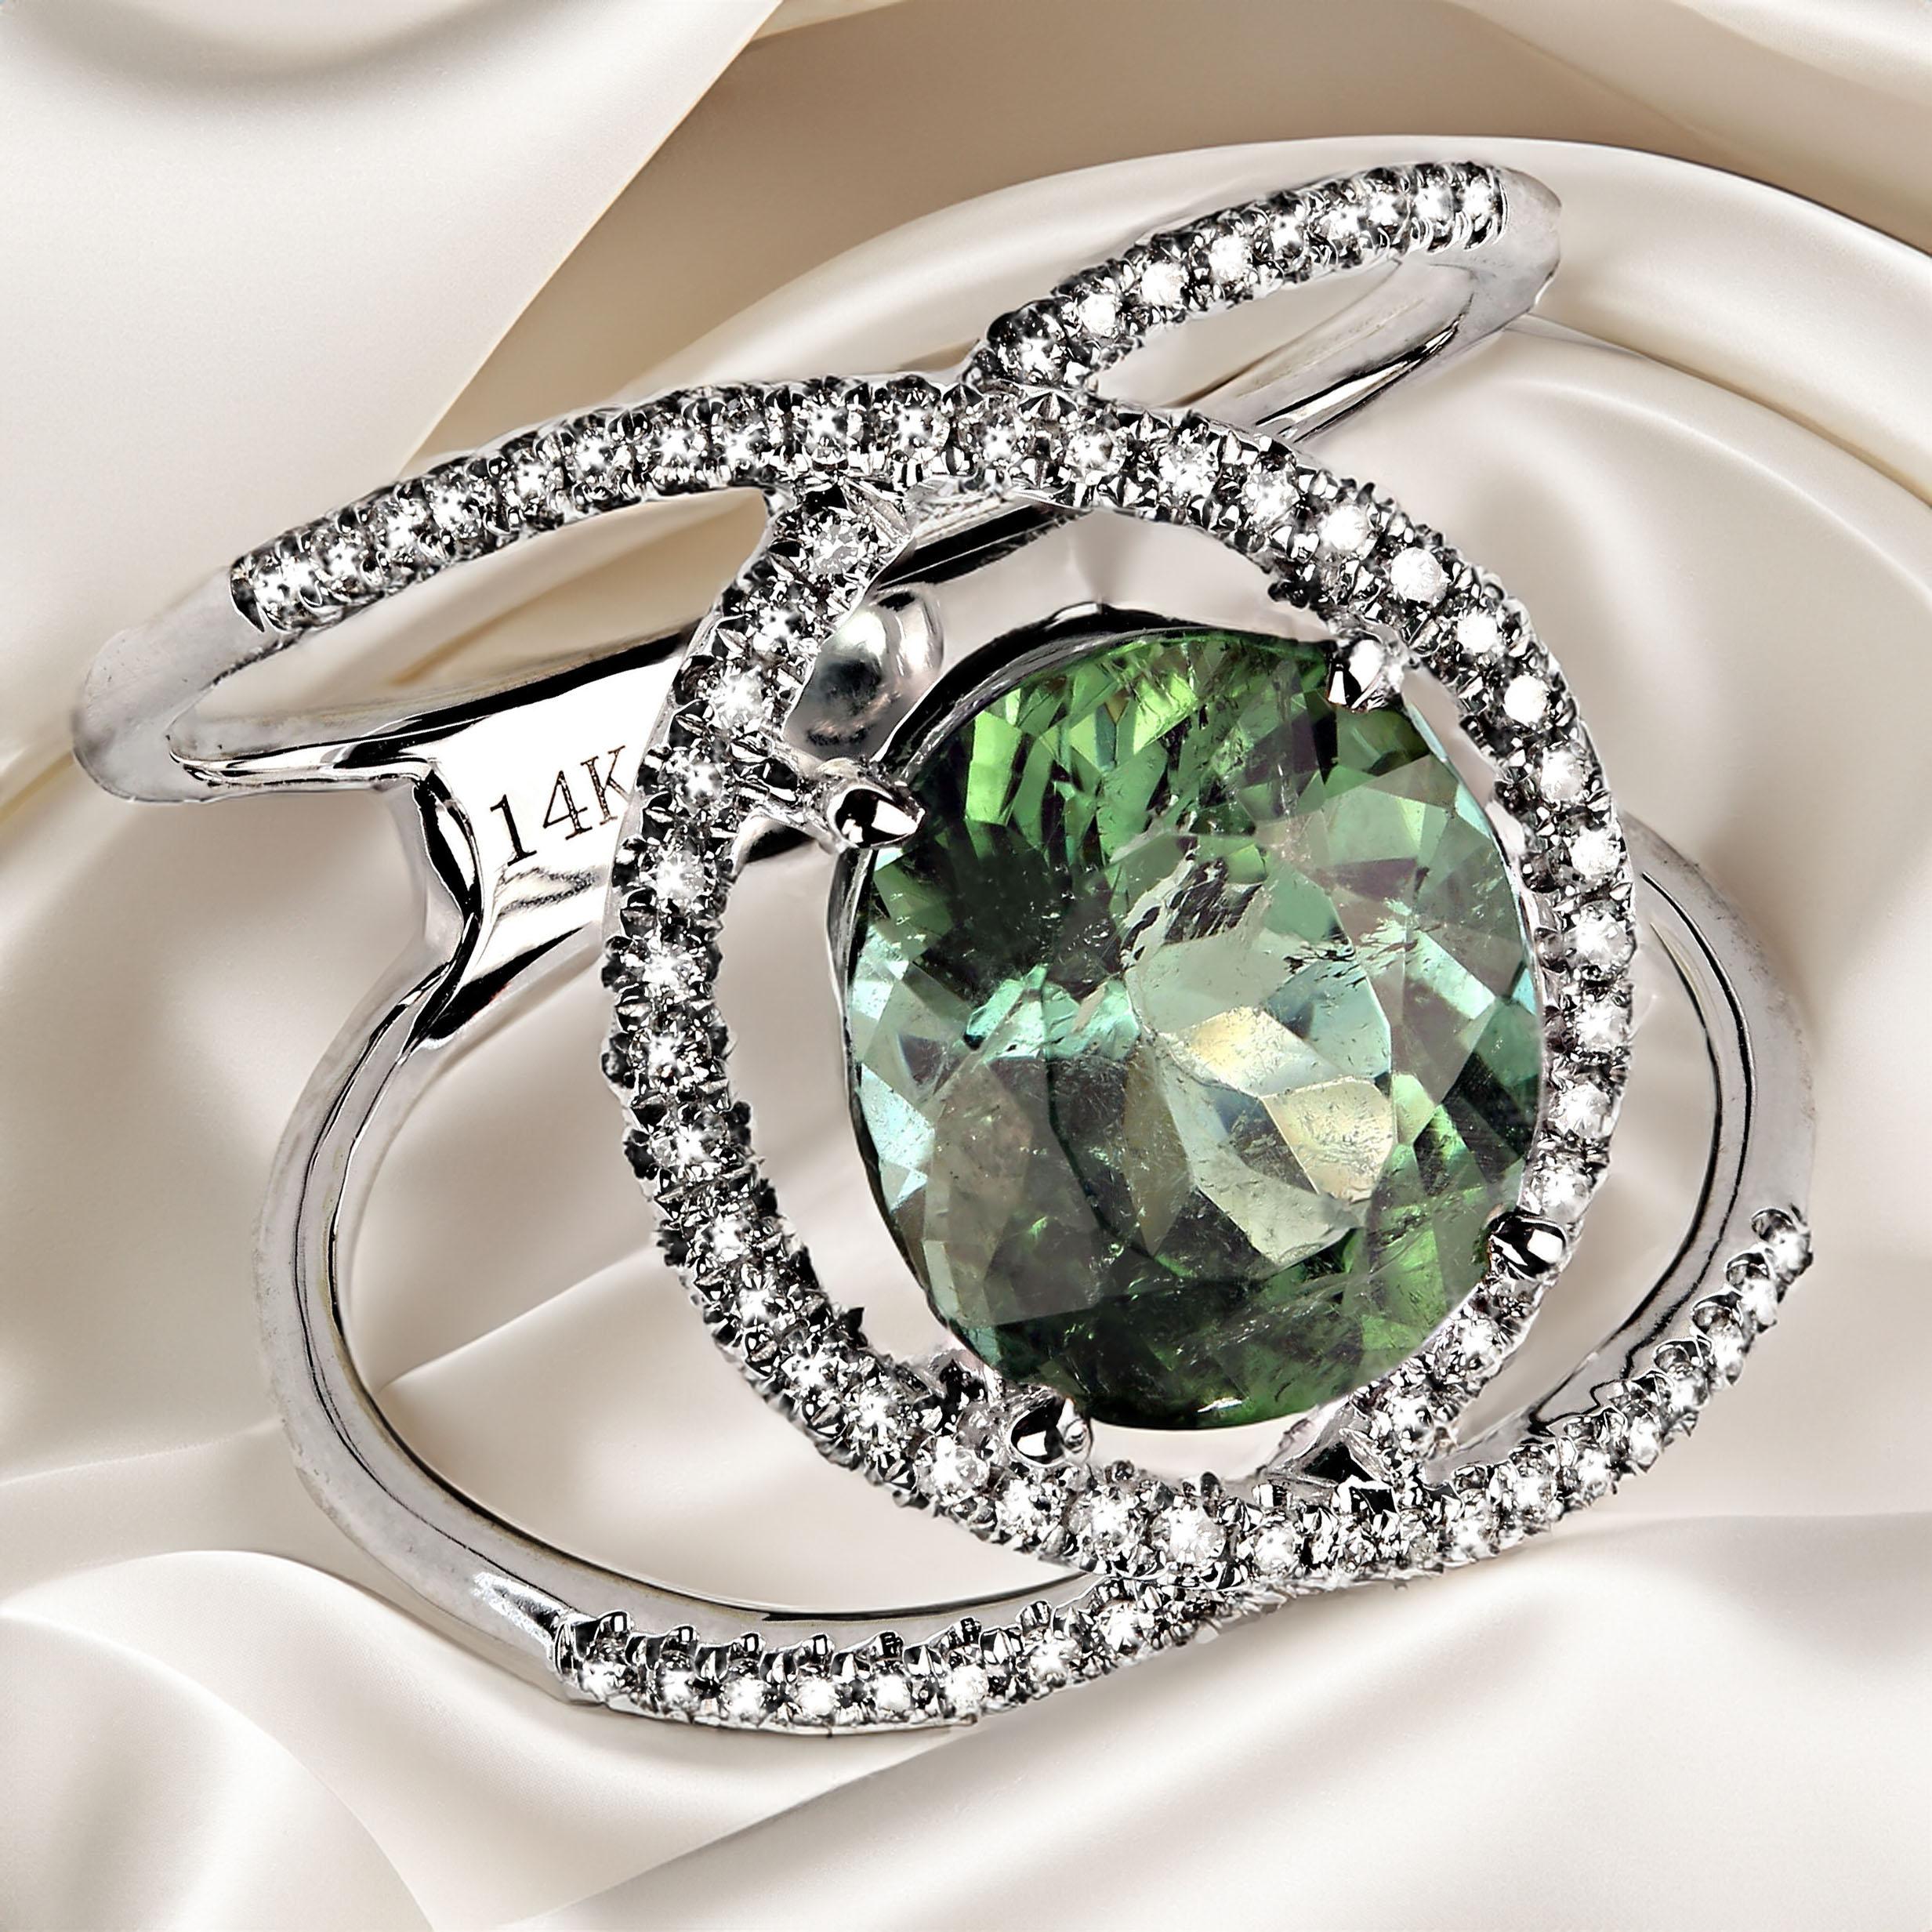 Funkelnder ovaler grüner Turmalin, gefasst in einer markanten modernen Diamantfassung.  Diese Kombination hebt sowohl den wunderschönen brasilianischen grünen Turmalin als auch die Linien der Fassung aus 14 Karat Weißgold und Diamanten hervor. 